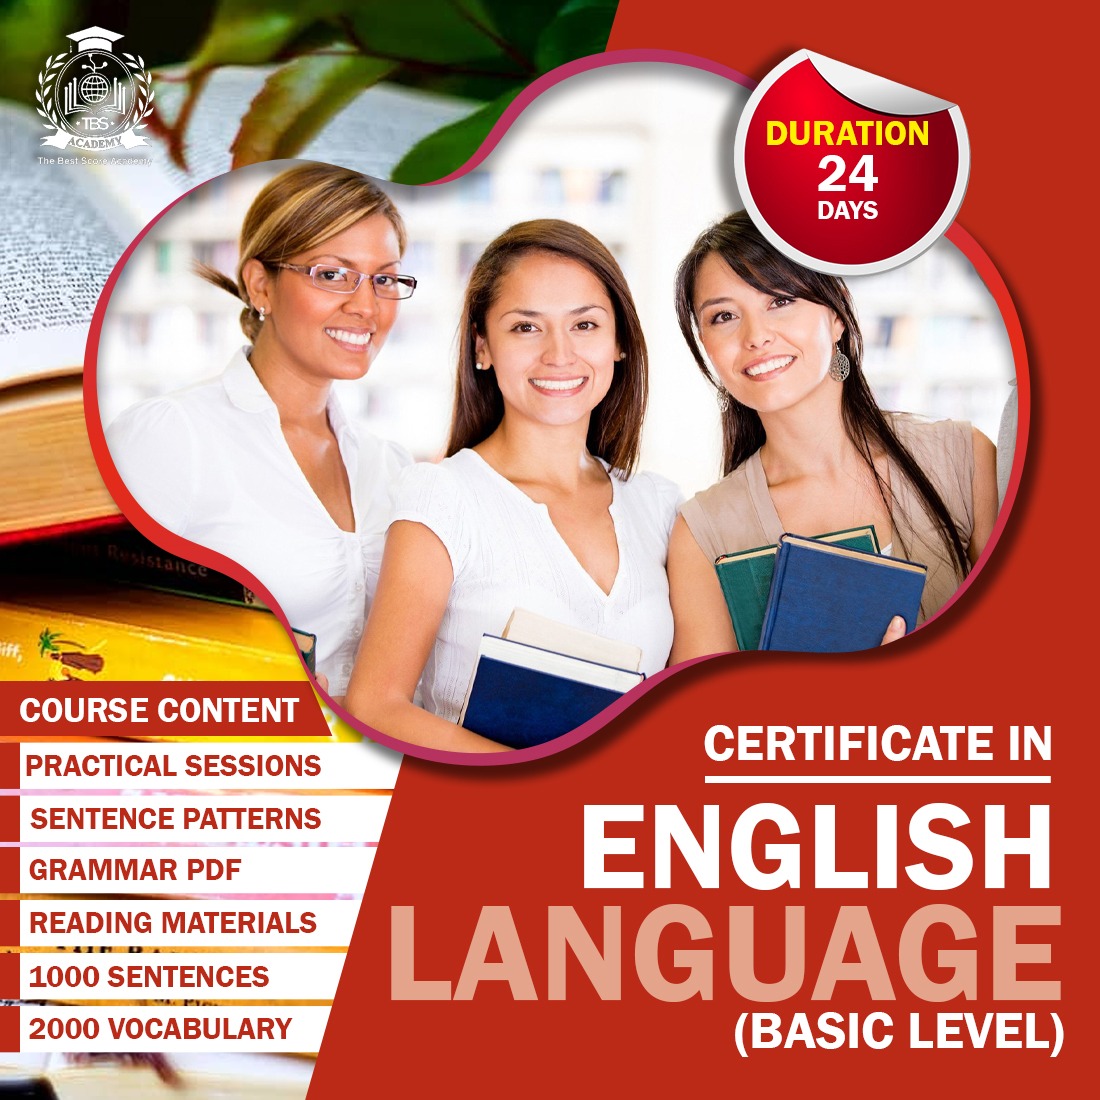 Certificate in English Language -Basic